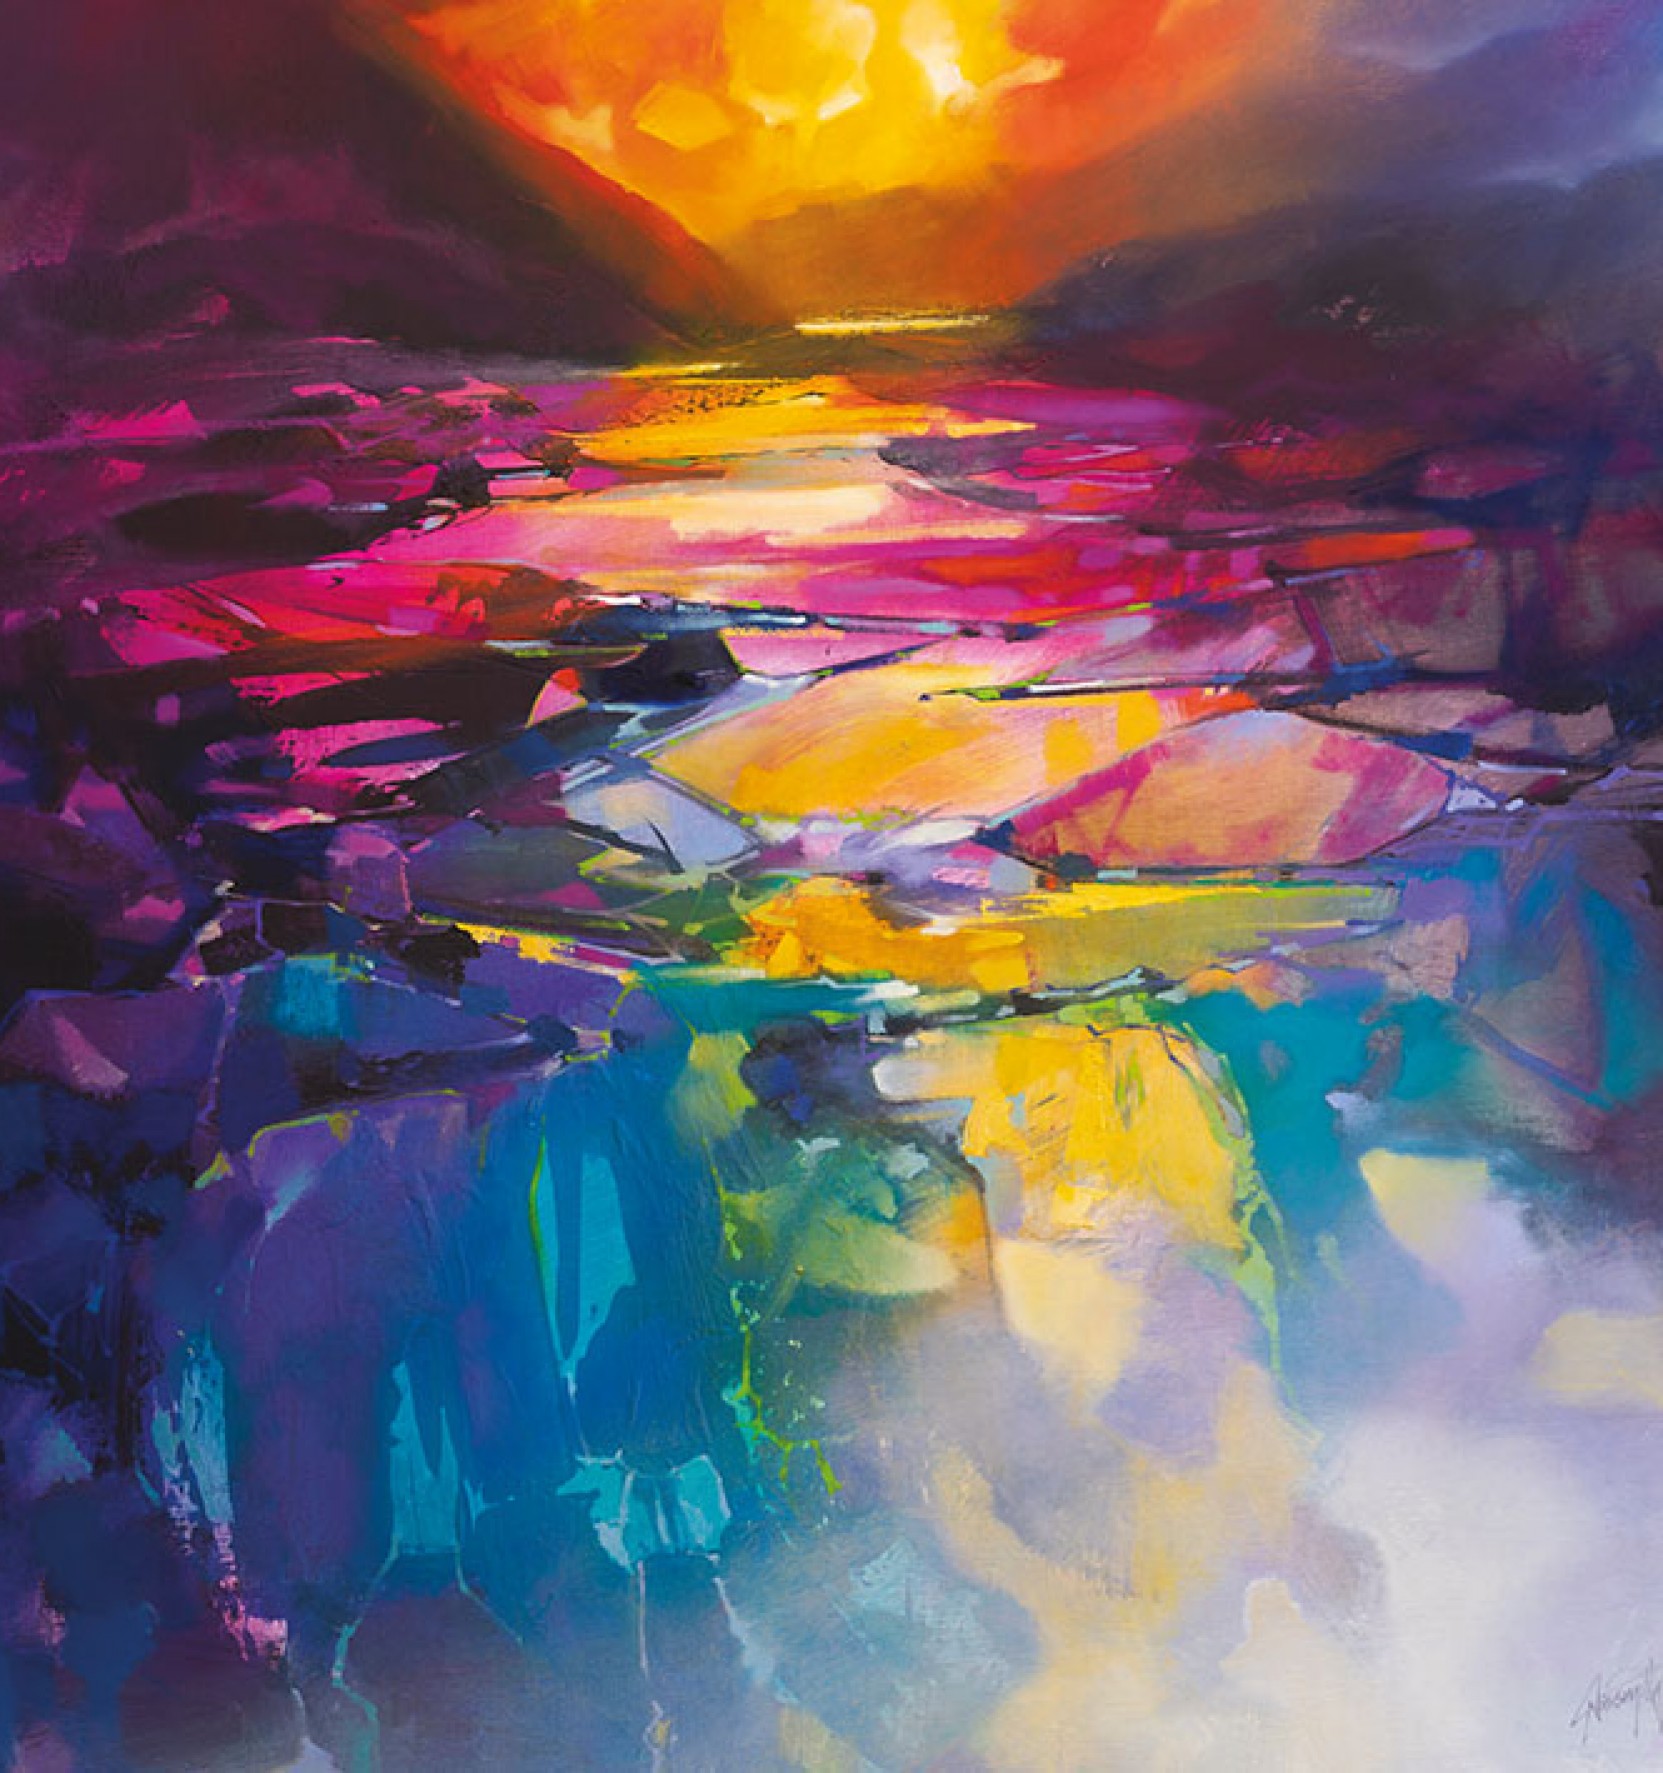 Spectrum Valley by Scott Naismith